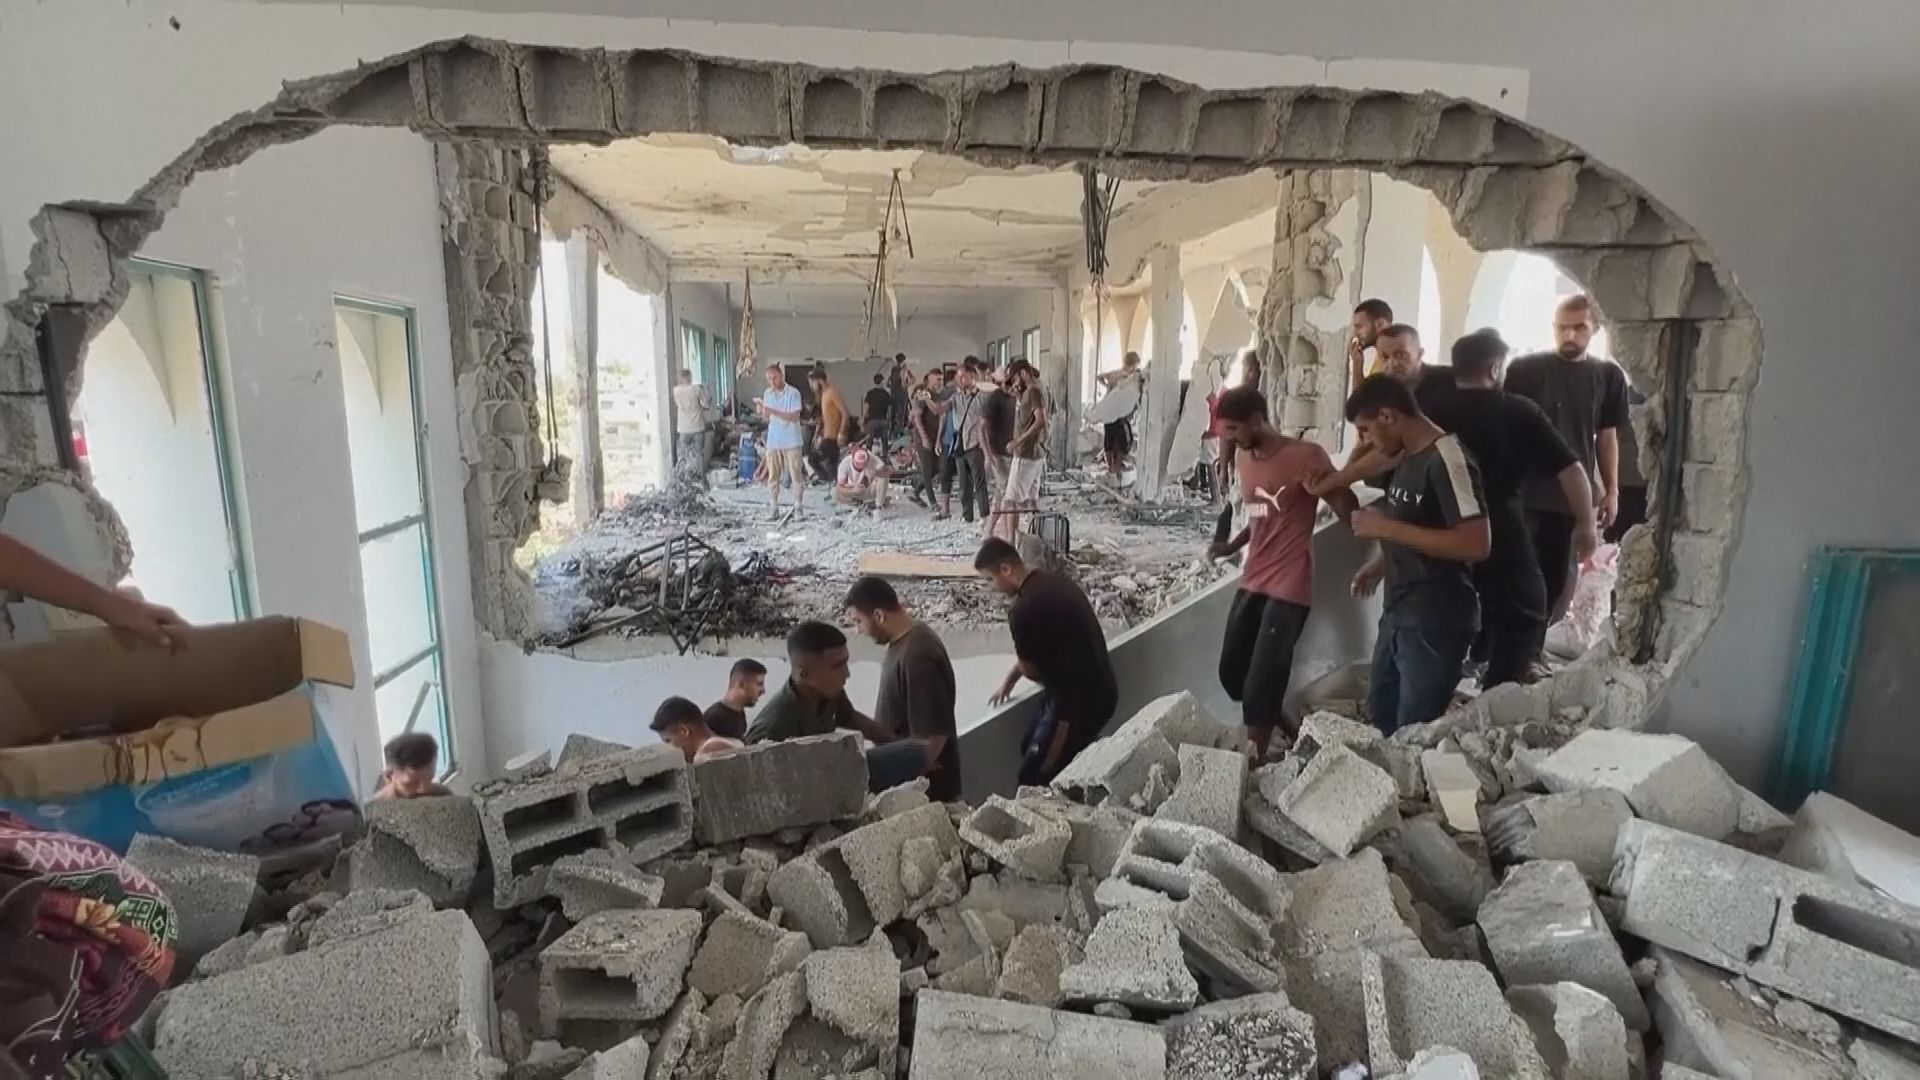 イスラエル軍がまたもガザの学校を攻撃 避難民ら30人以上が被害か